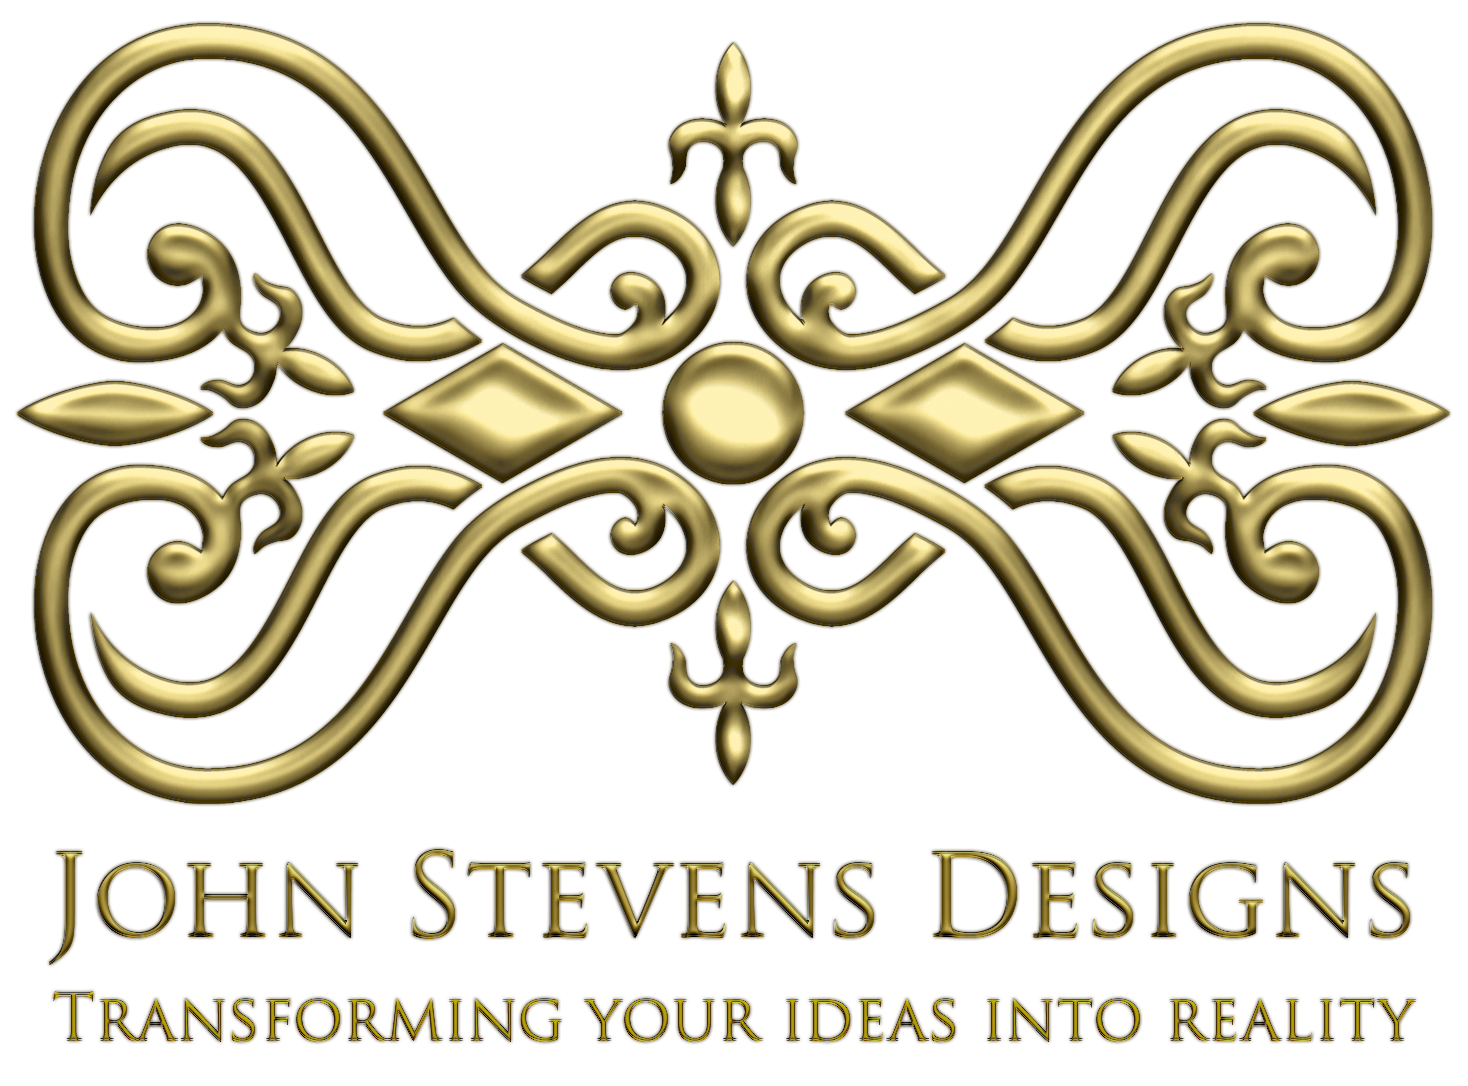 John Stevens Designs